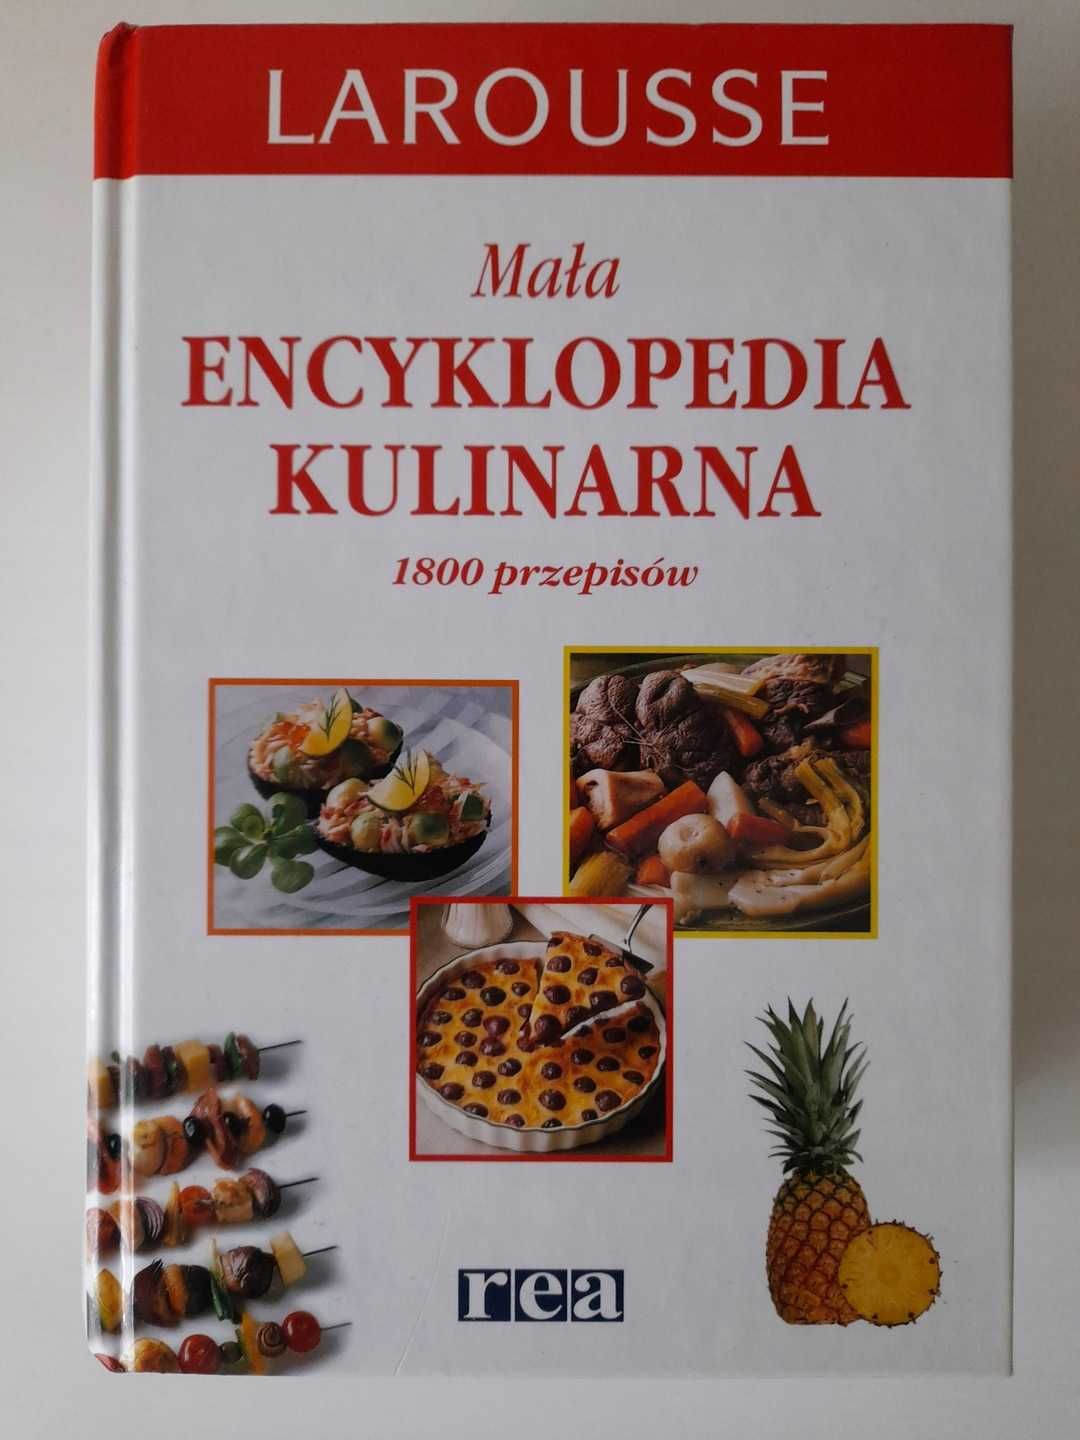 Mała encyklopedia kulinarna 1800 przepisów